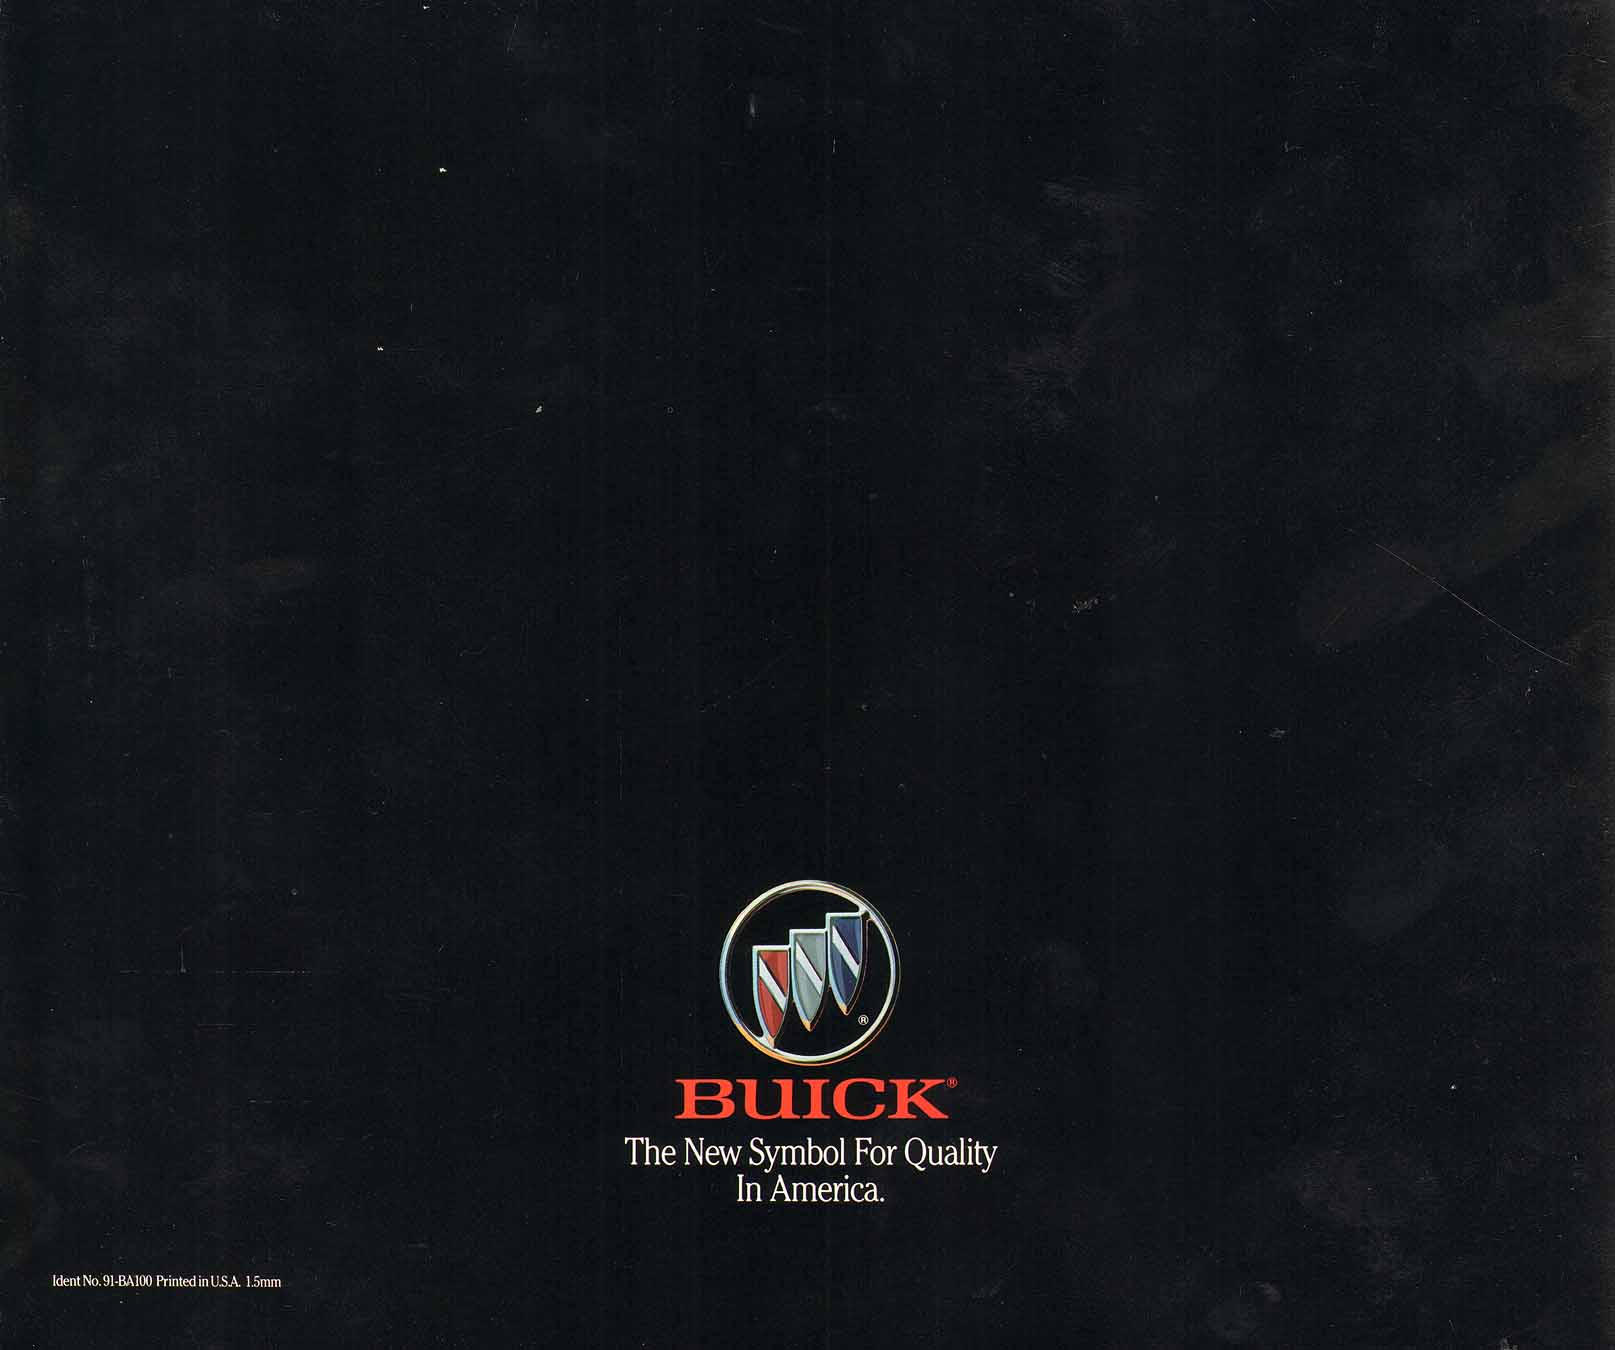 1991 Buick Full Line Prestige-92